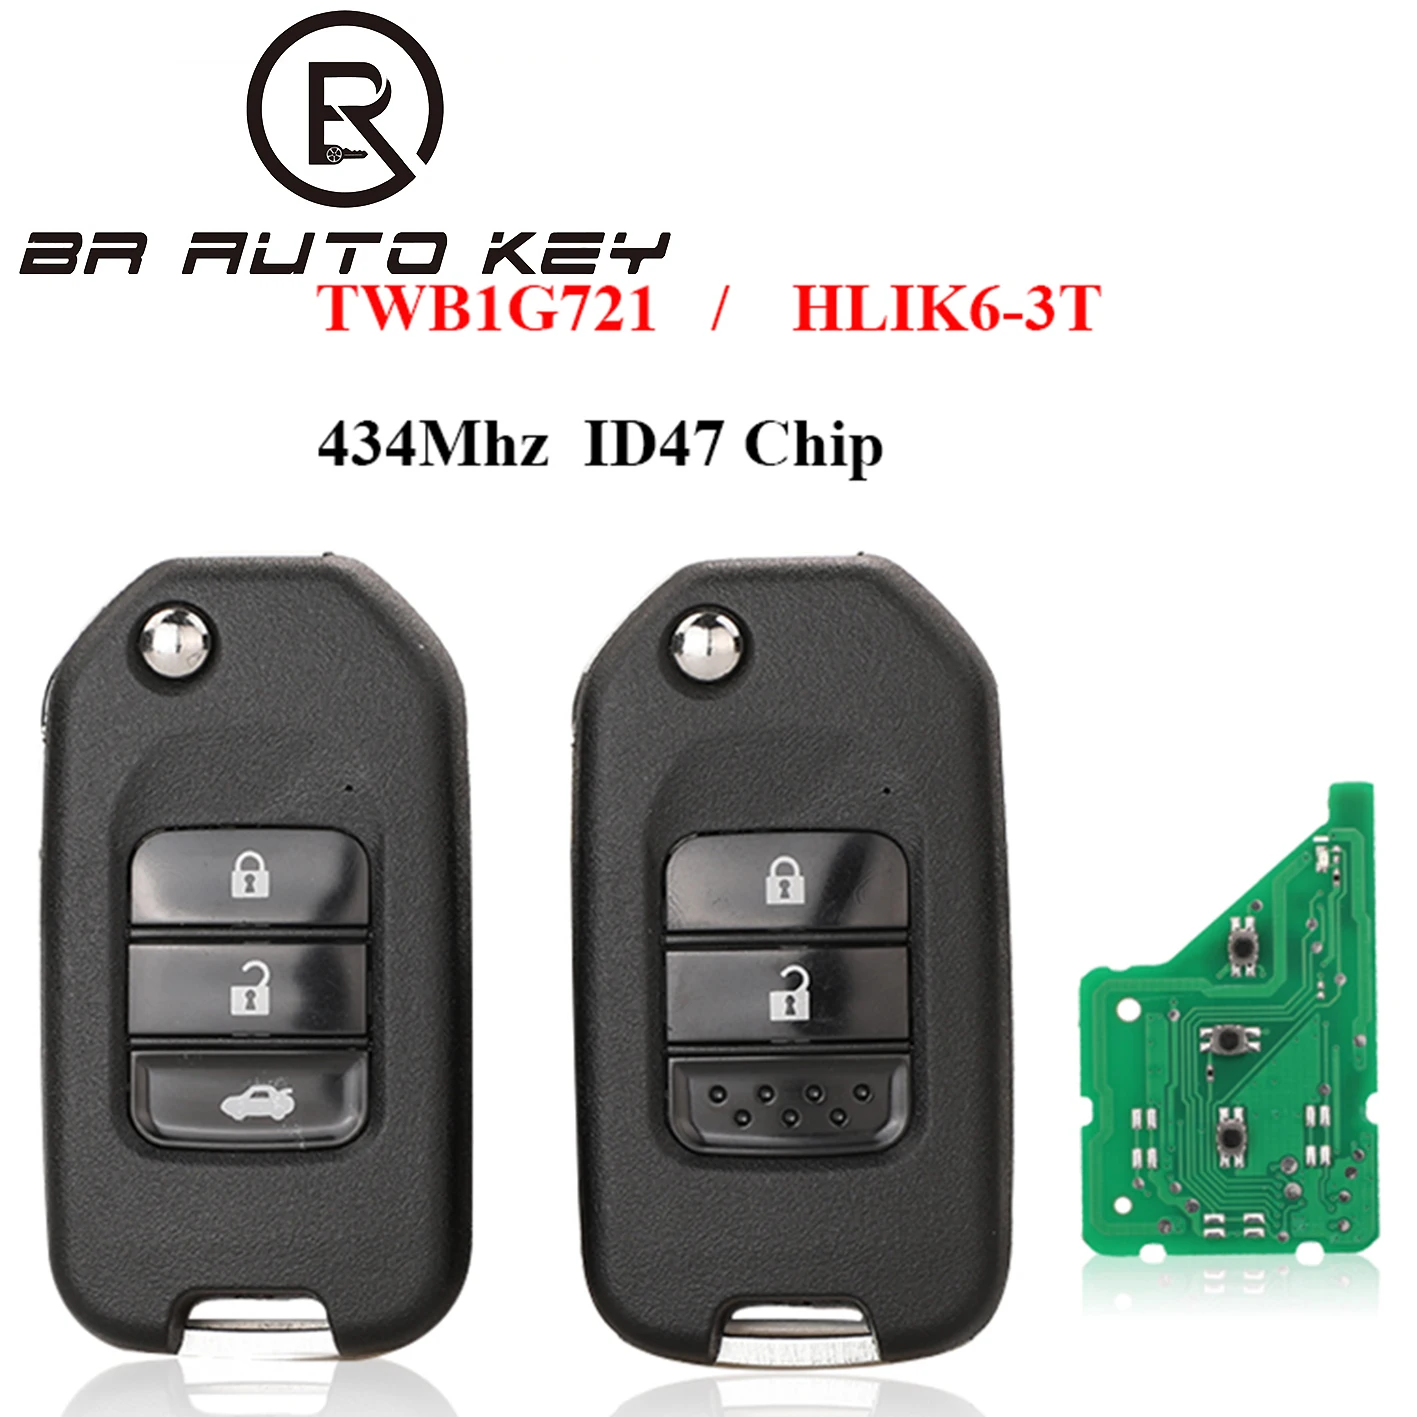 

BRKEY 2/3 Buttons 434Mhz A/G ID47 Chip For Honda Civic Accord City CR-V Jazz XR-V Vezel HR-V FRV Remote Key HLIK6-3T TWB1G721